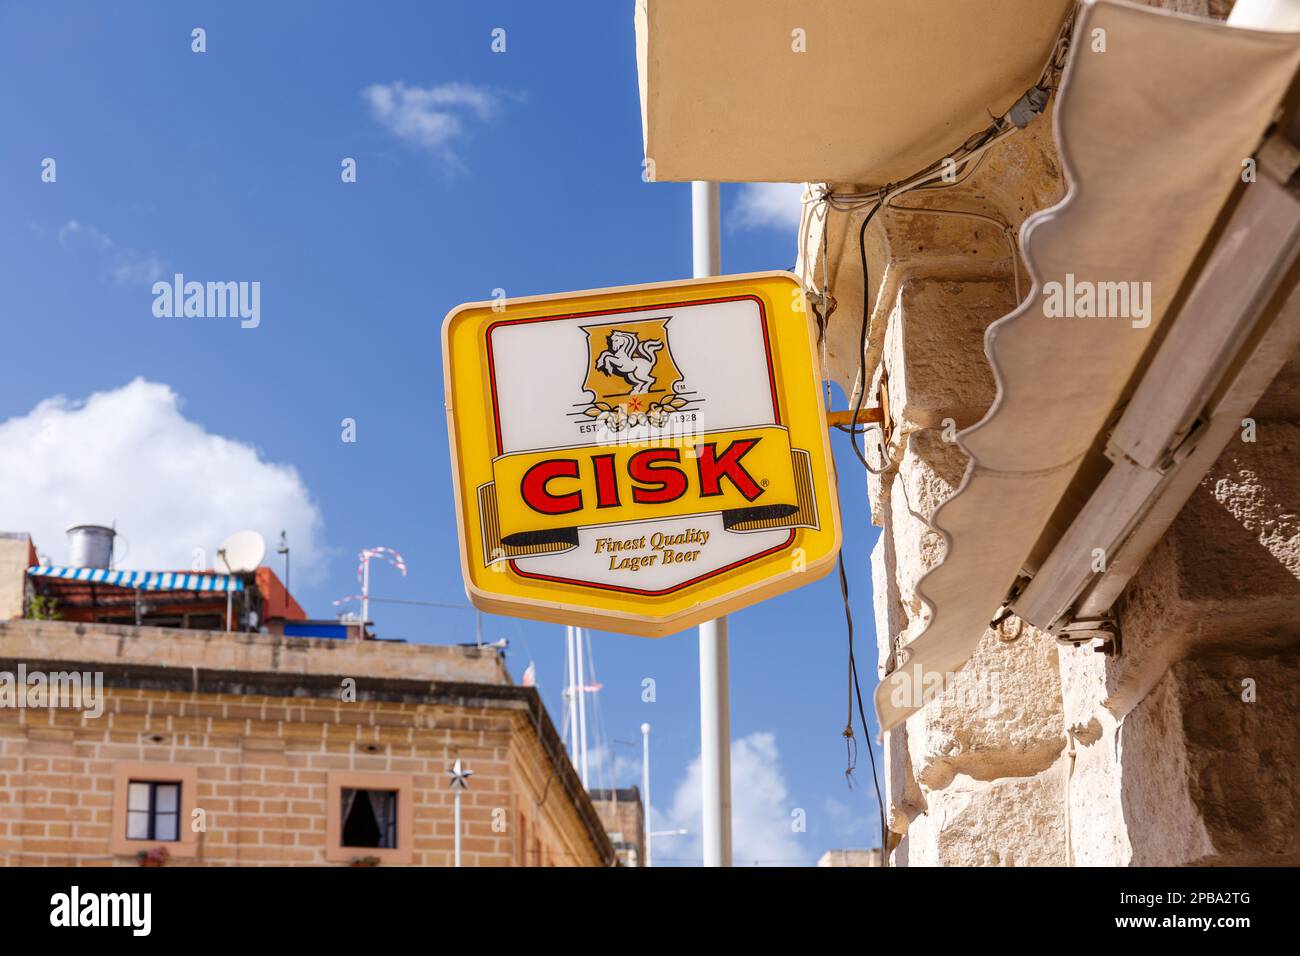 BIRQU, MALTA - SEPTEMBER 11, 2017: Cisk beer brand signage in the streets of Birqu, Malta in September 2017. Stock Photo